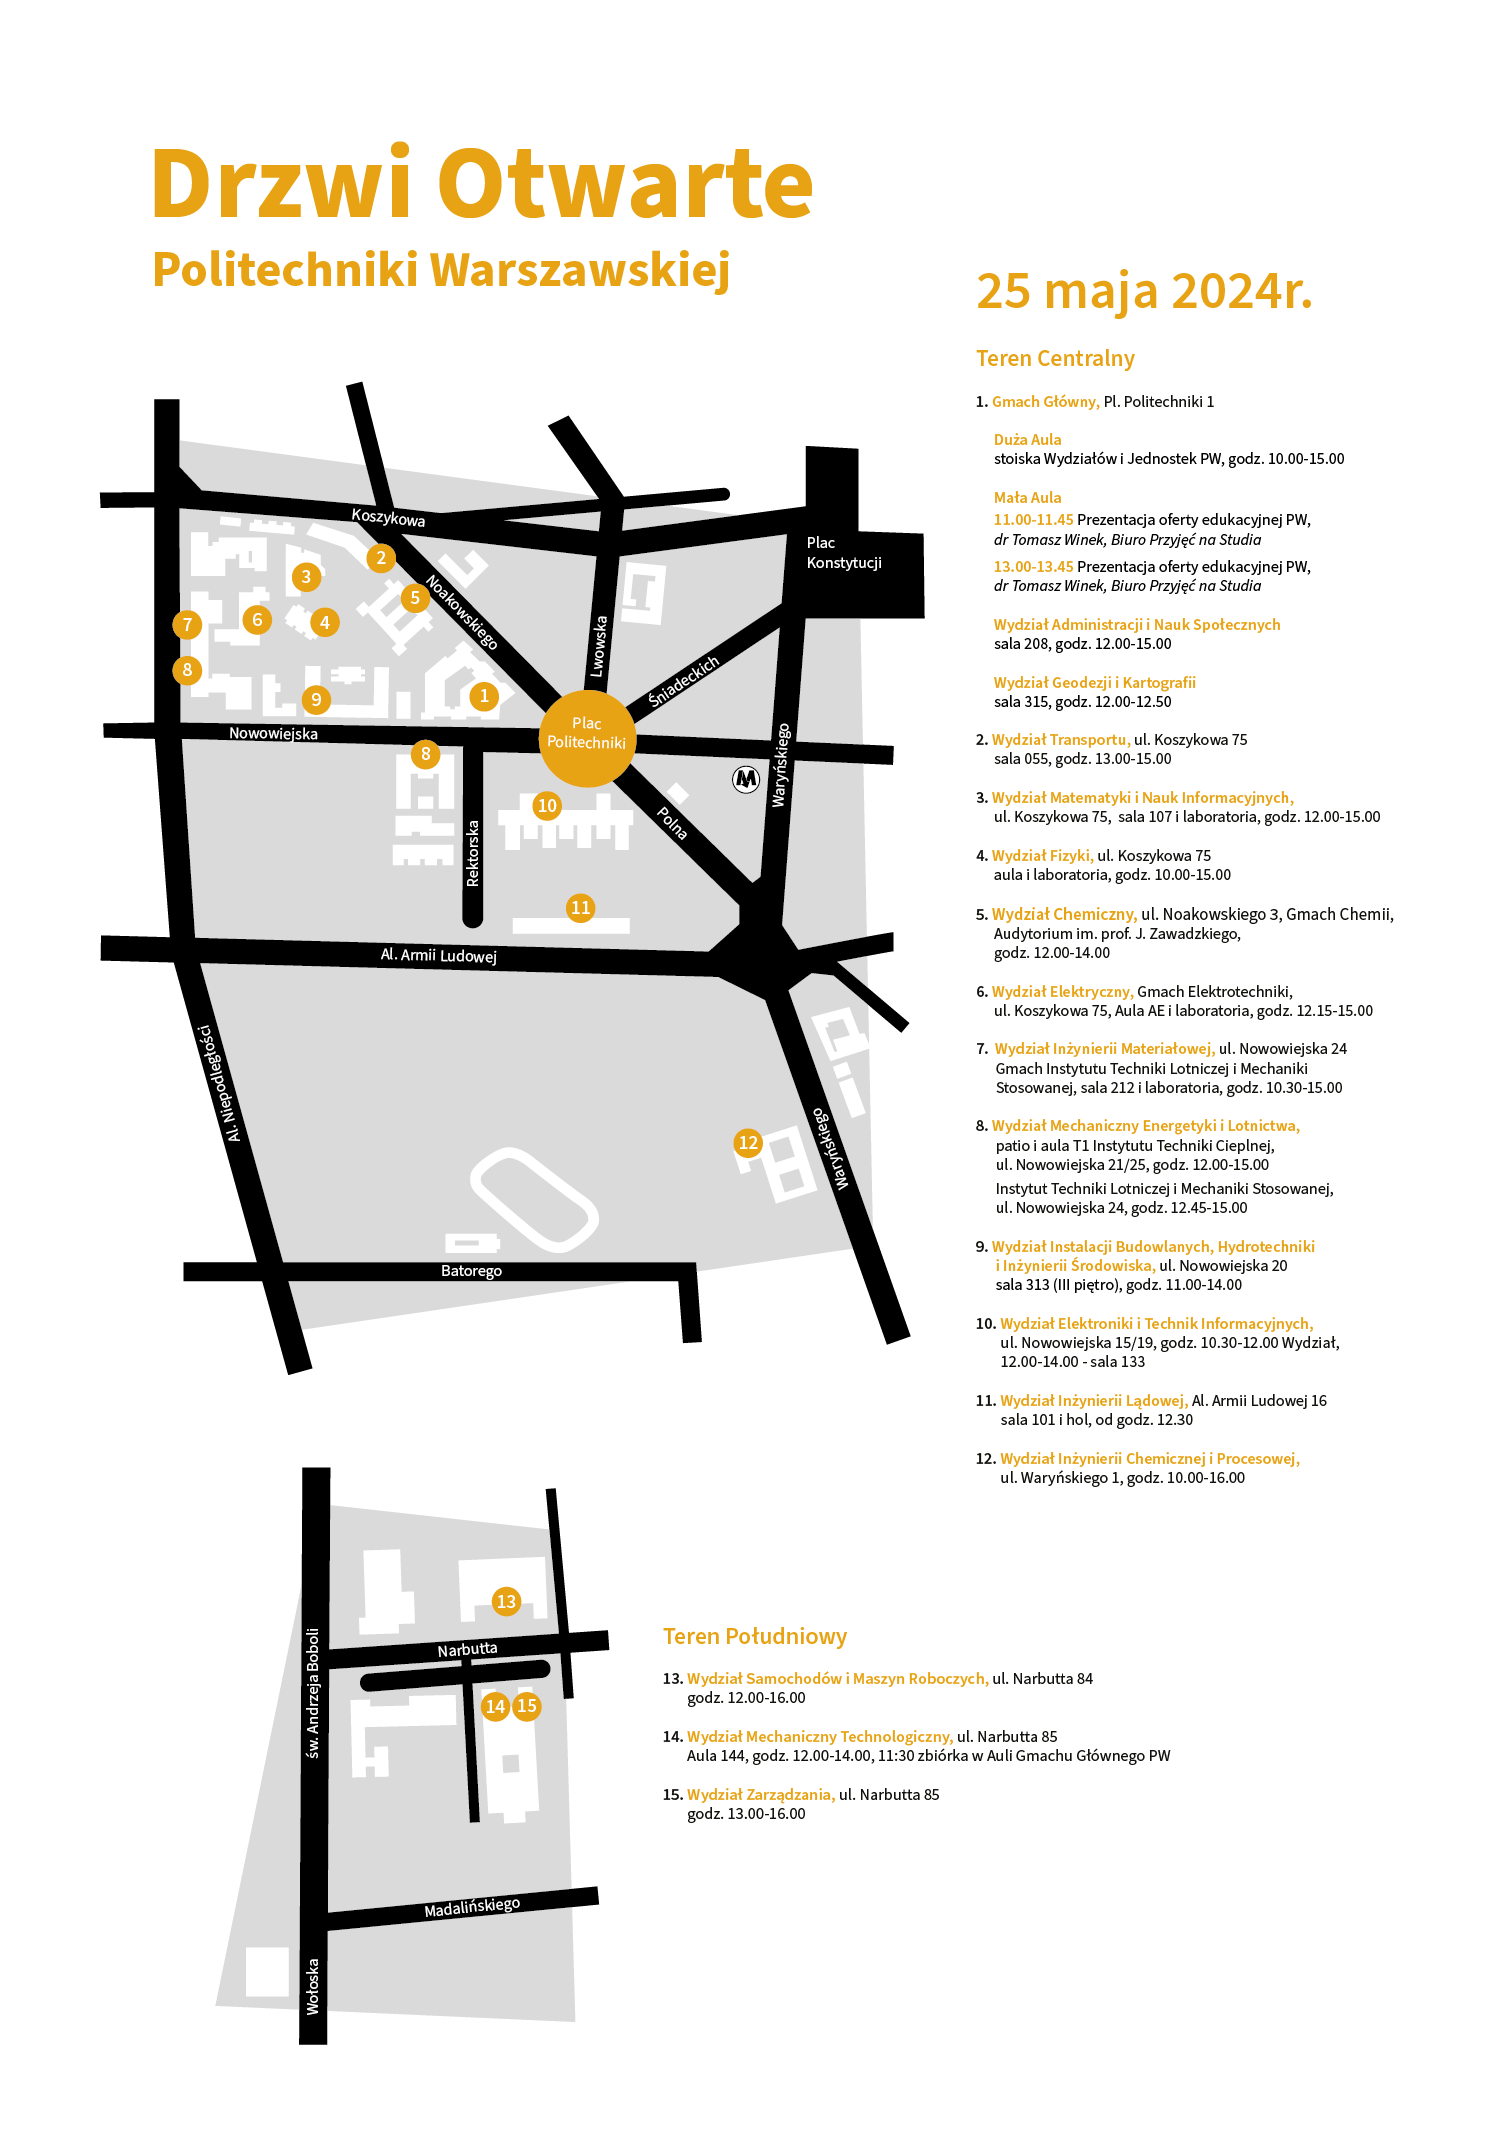 Na grafice mapa kampusów PW z zaznaczonymi miejscami, gdzie odbywają się wydarzenia Drzwi Otwartych PW